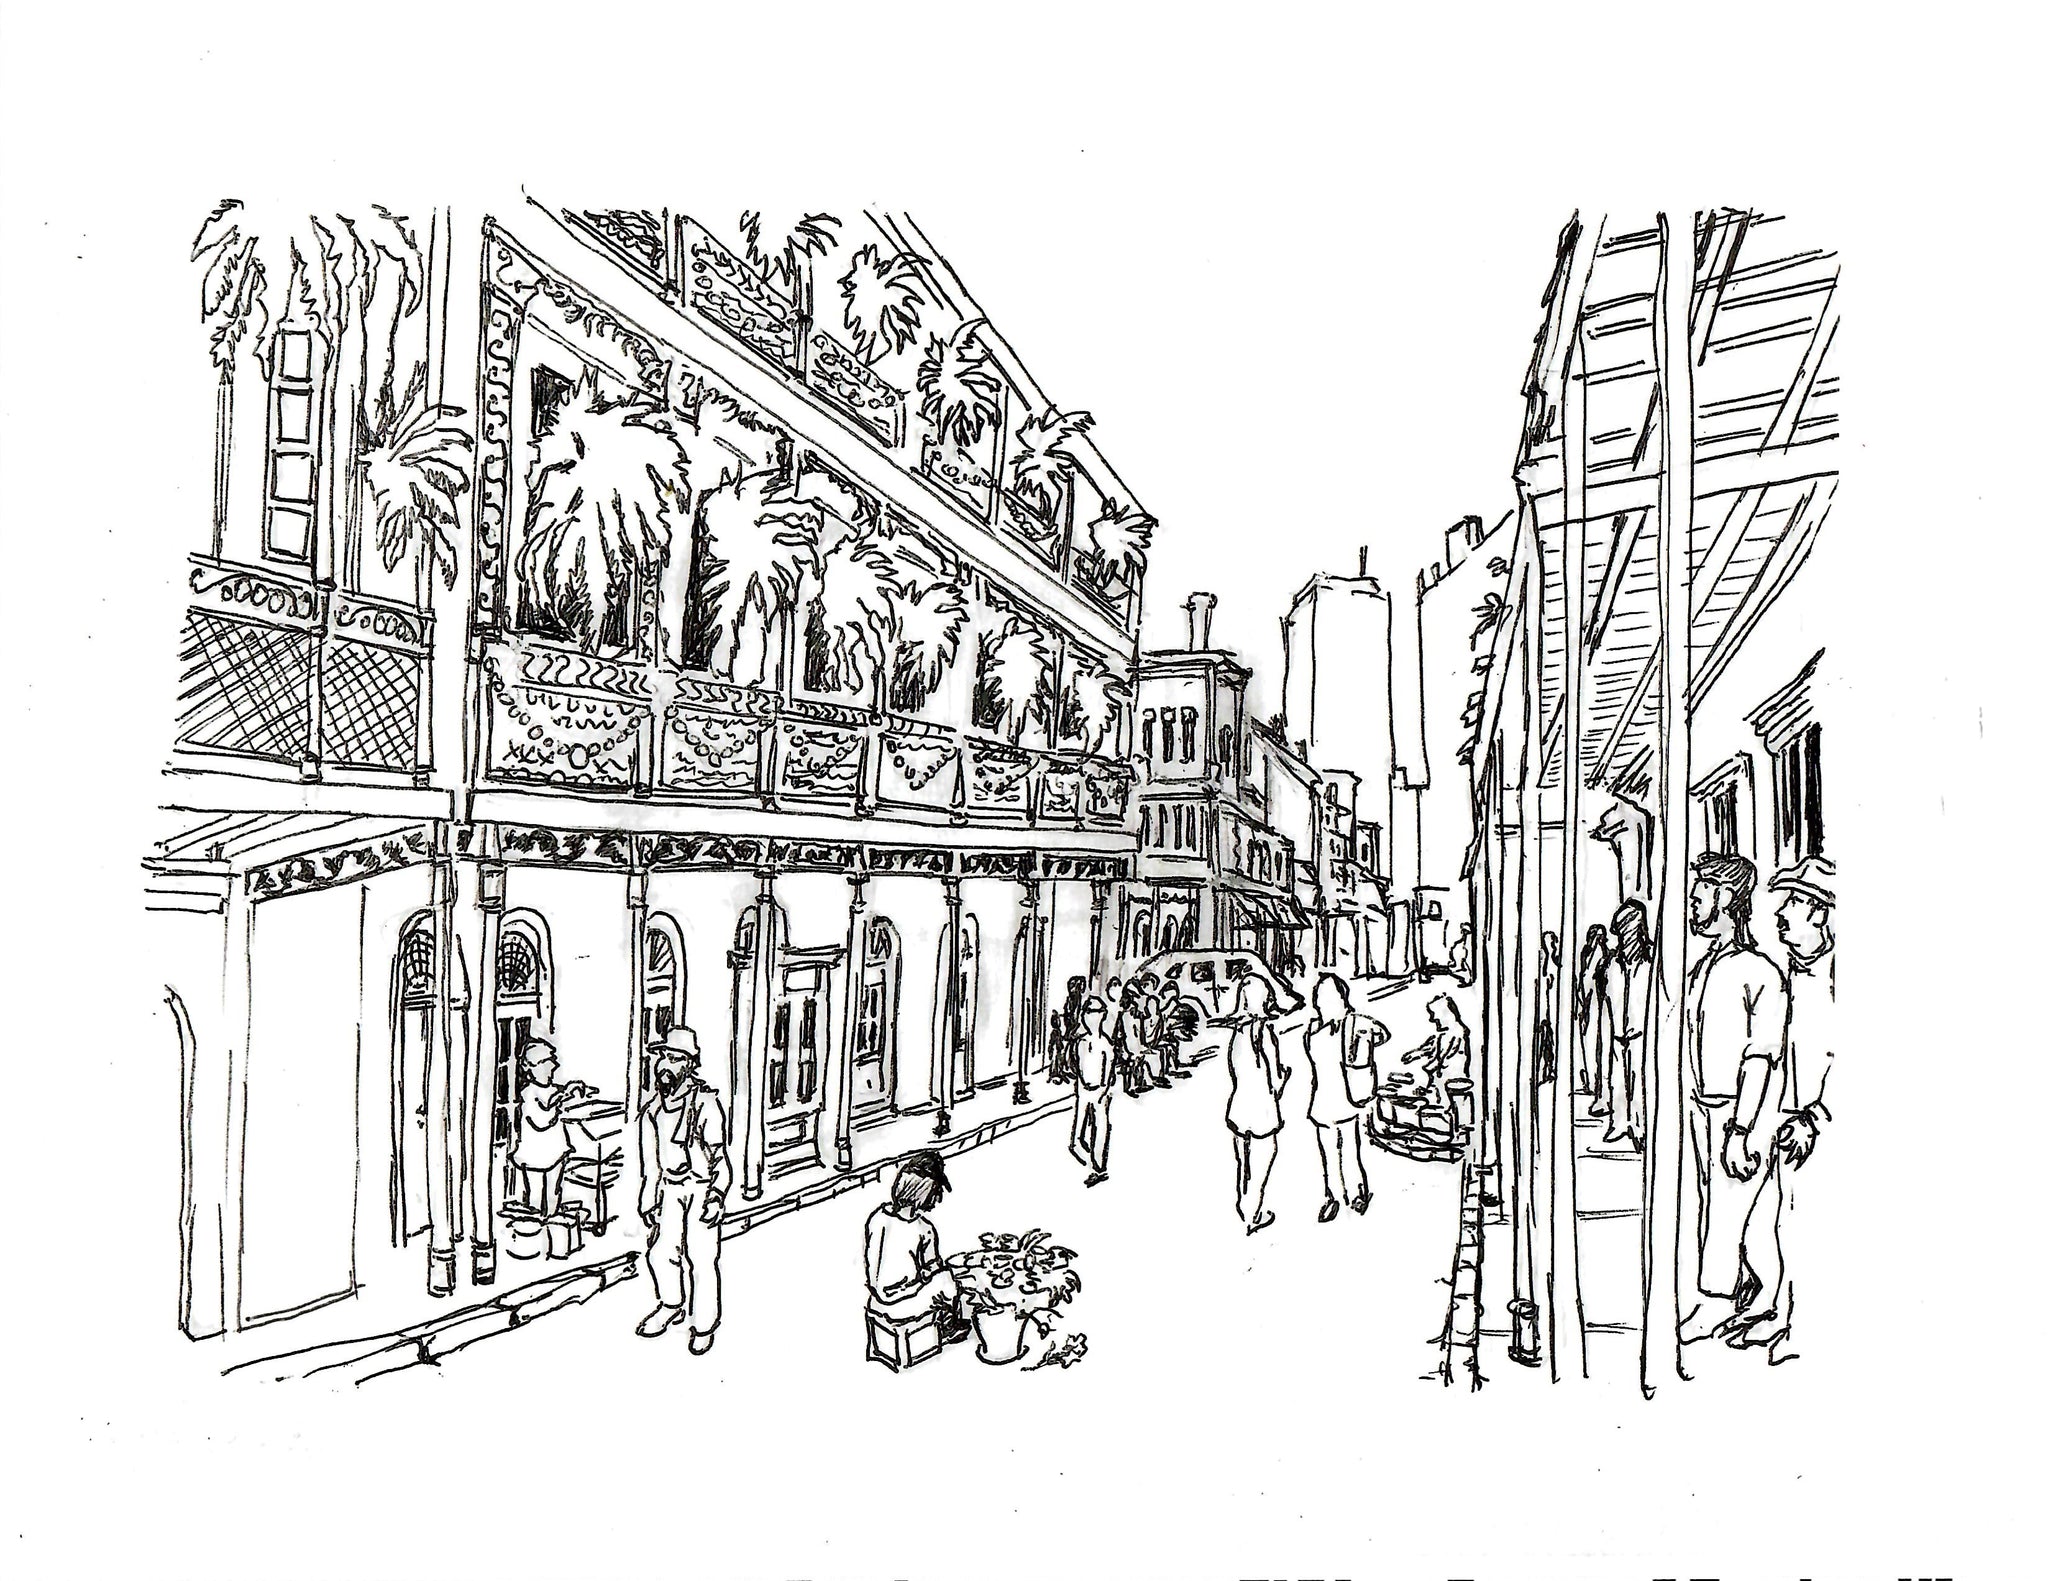 PEN & INK - NEW ORLEANS FRENCH QUARTER STREET SCENE